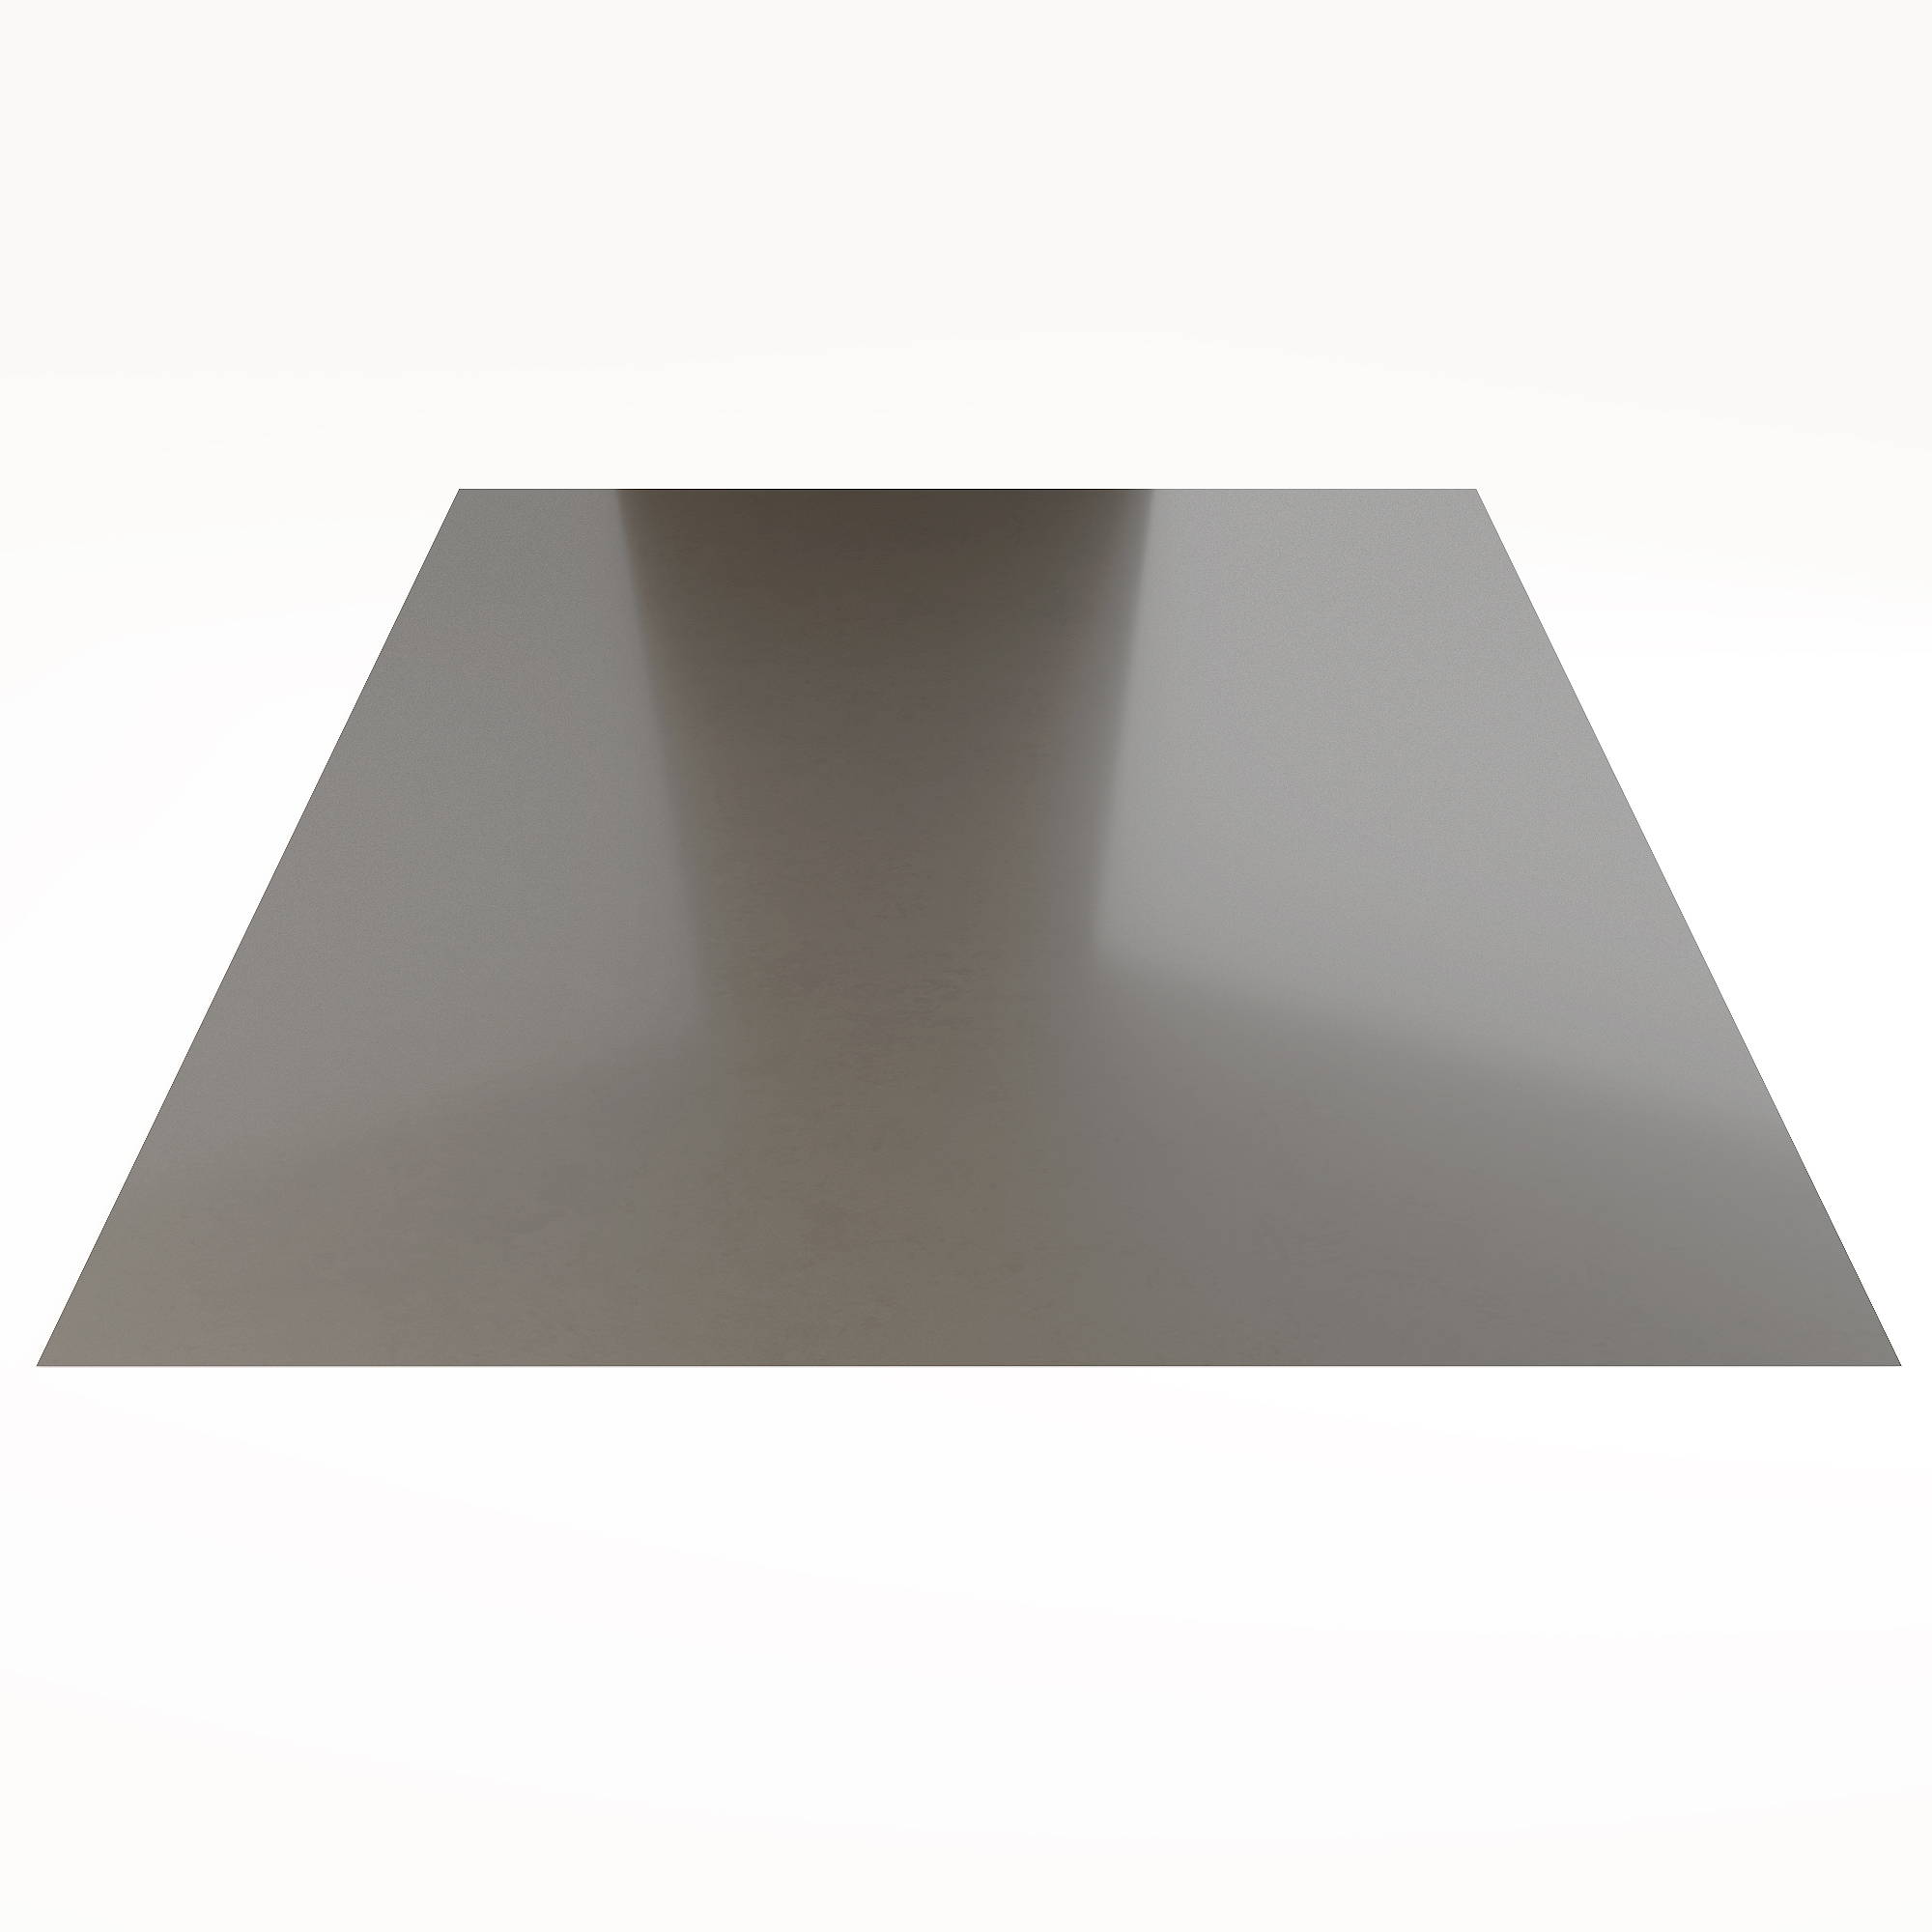 Гладкий лист Гладкий полиэстер RAL 7004 (Серый) 3000*1250*0,45 односторонний ламинированный